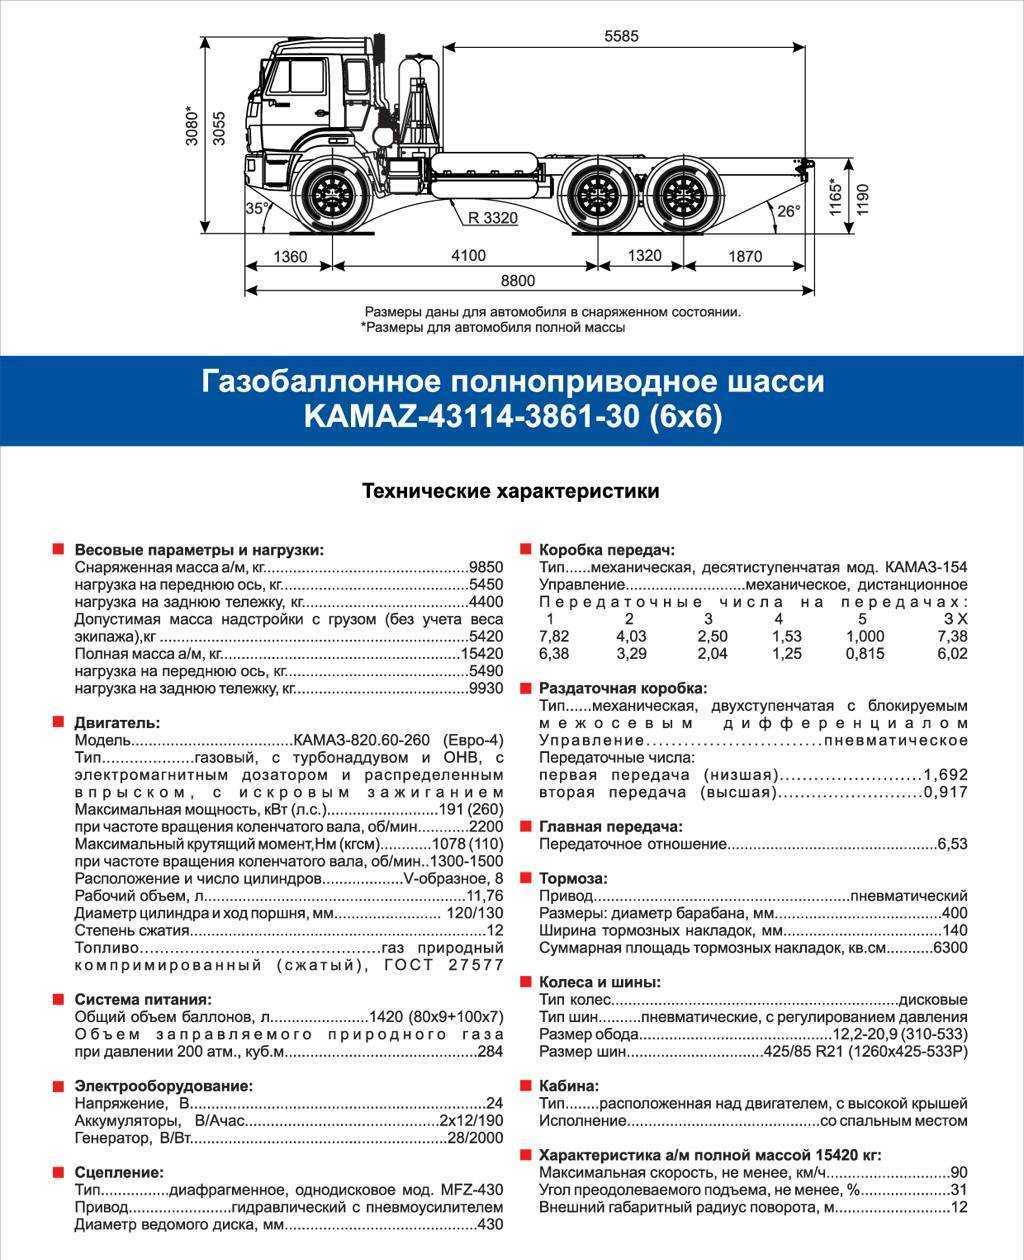 Самосвал камаз-65115: технические характеристики, габариты, руководство по эксплуатации